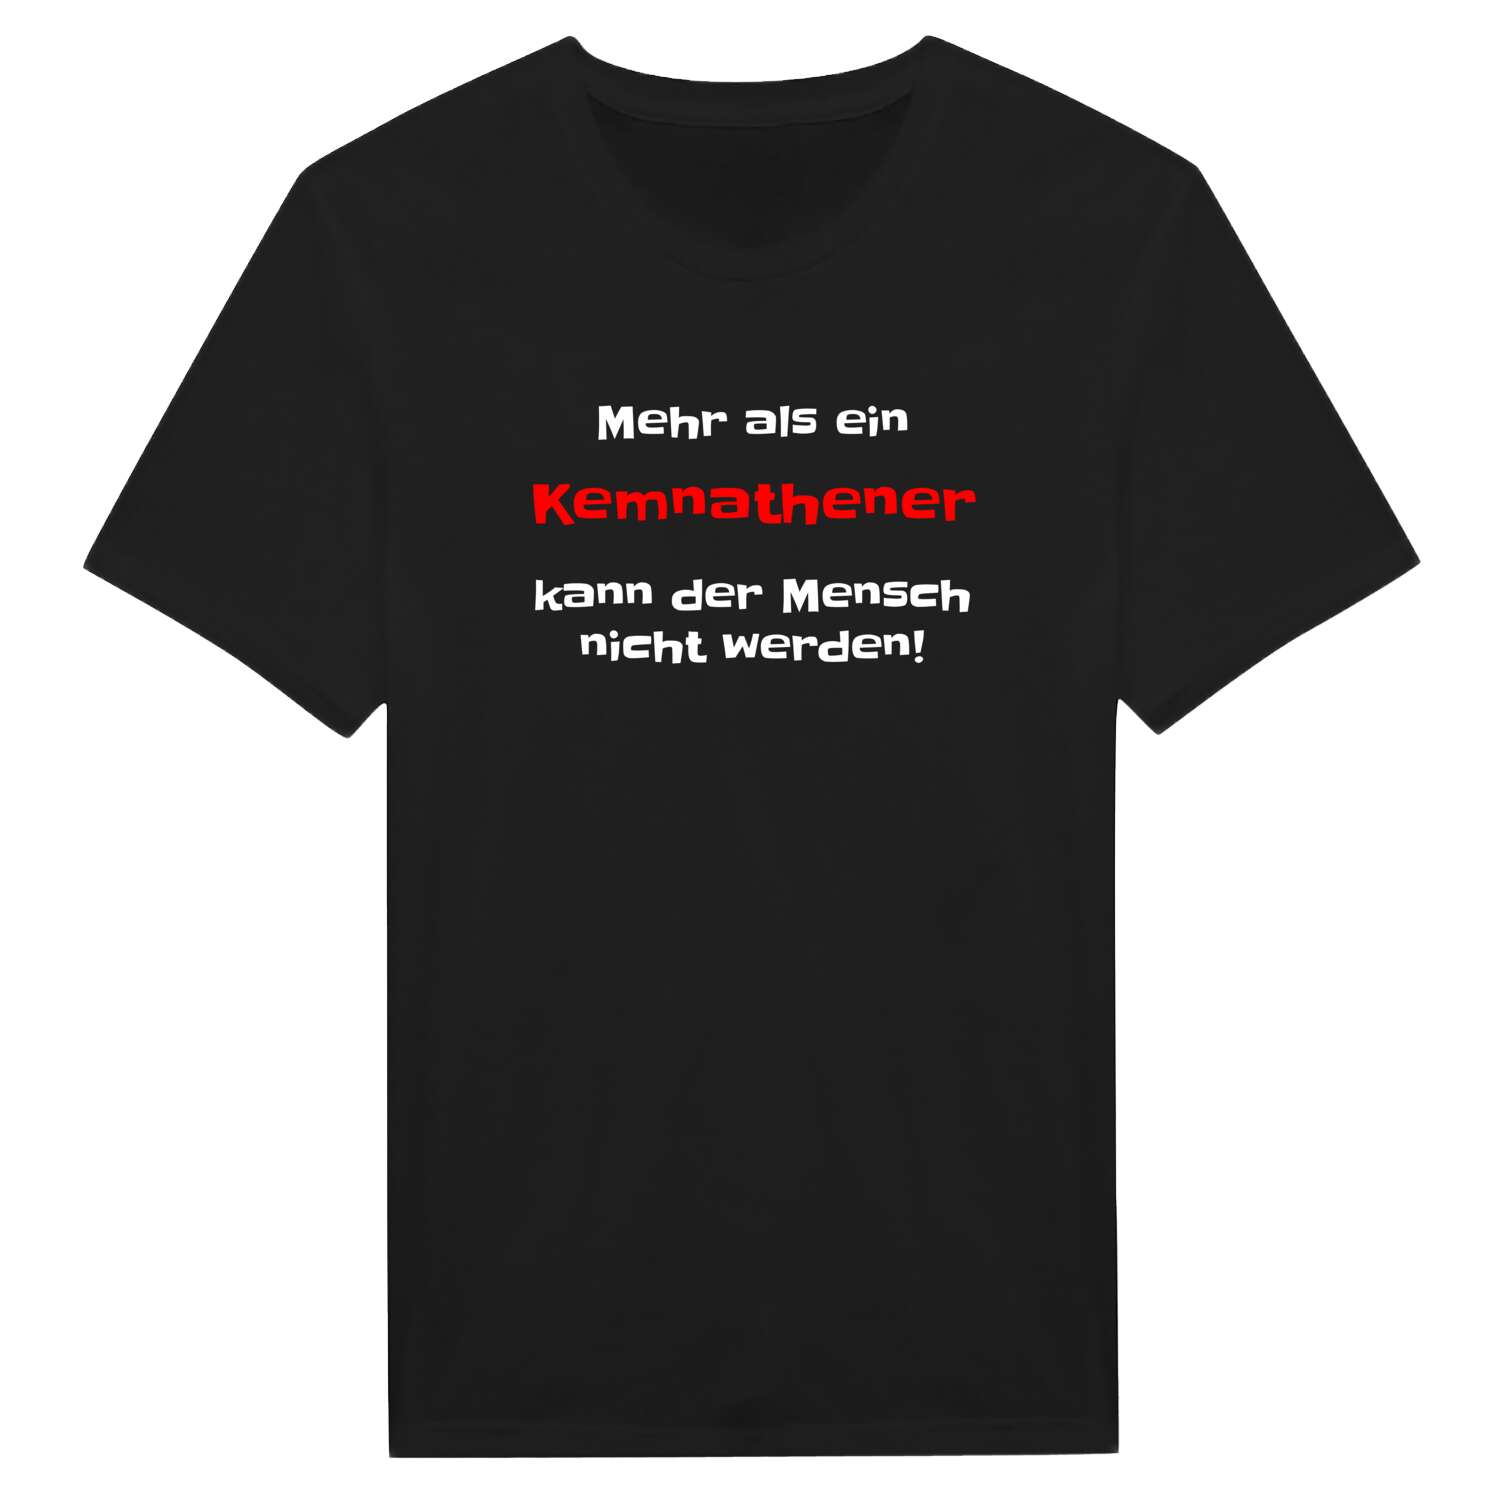 Kemnathen T-Shirt »Mehr als ein«